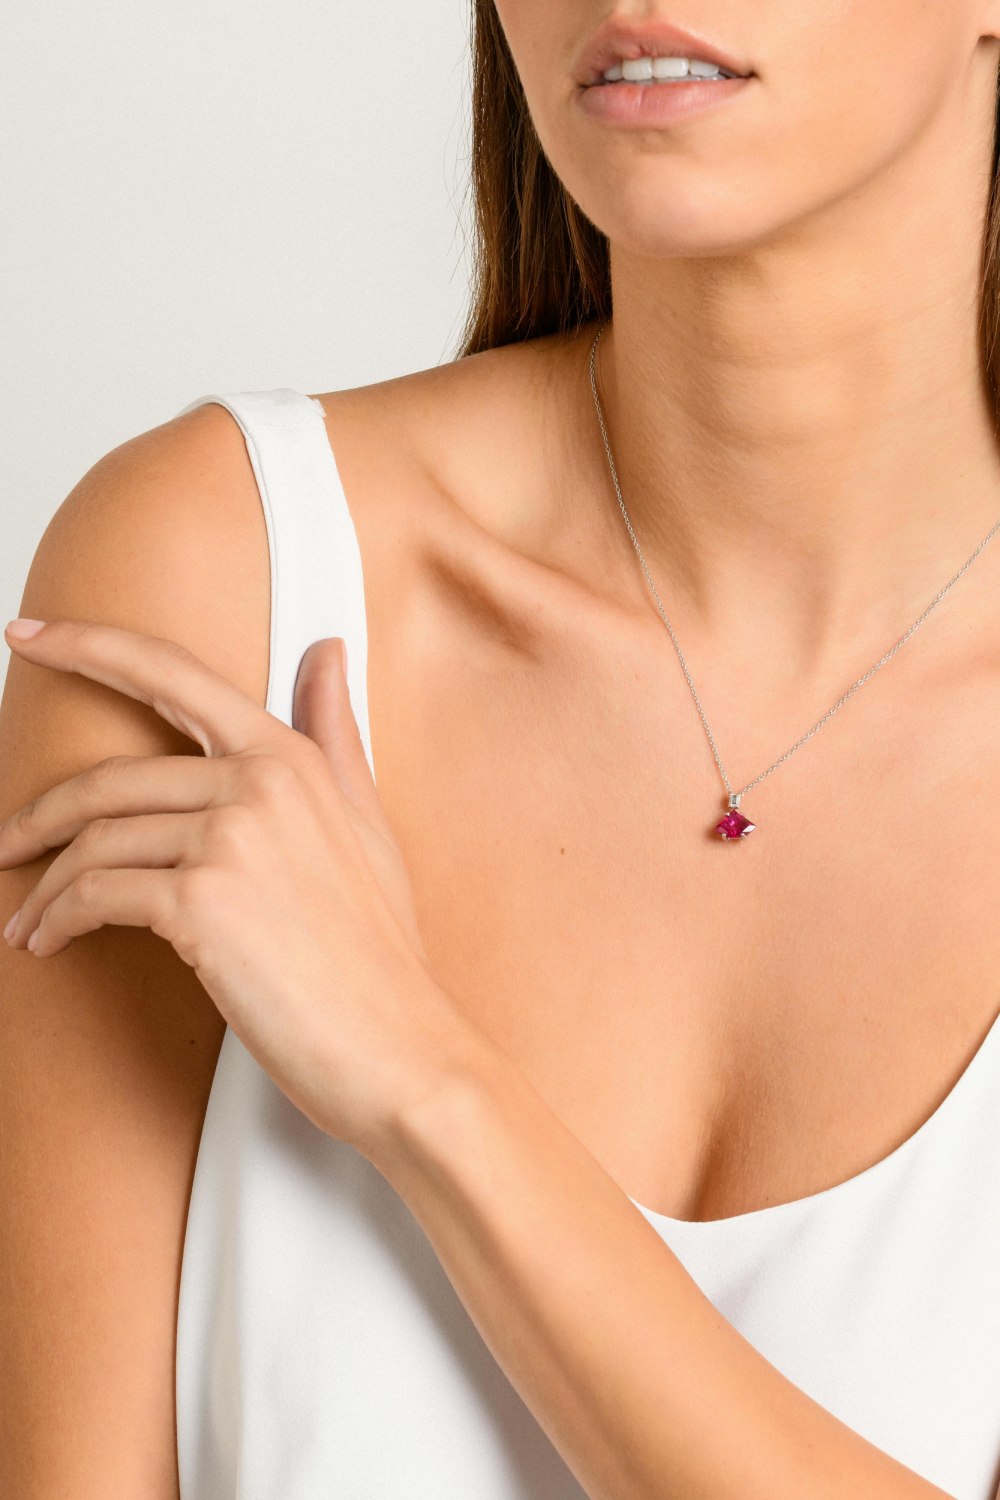 KESSARIS-Ruby Diamond Necklace